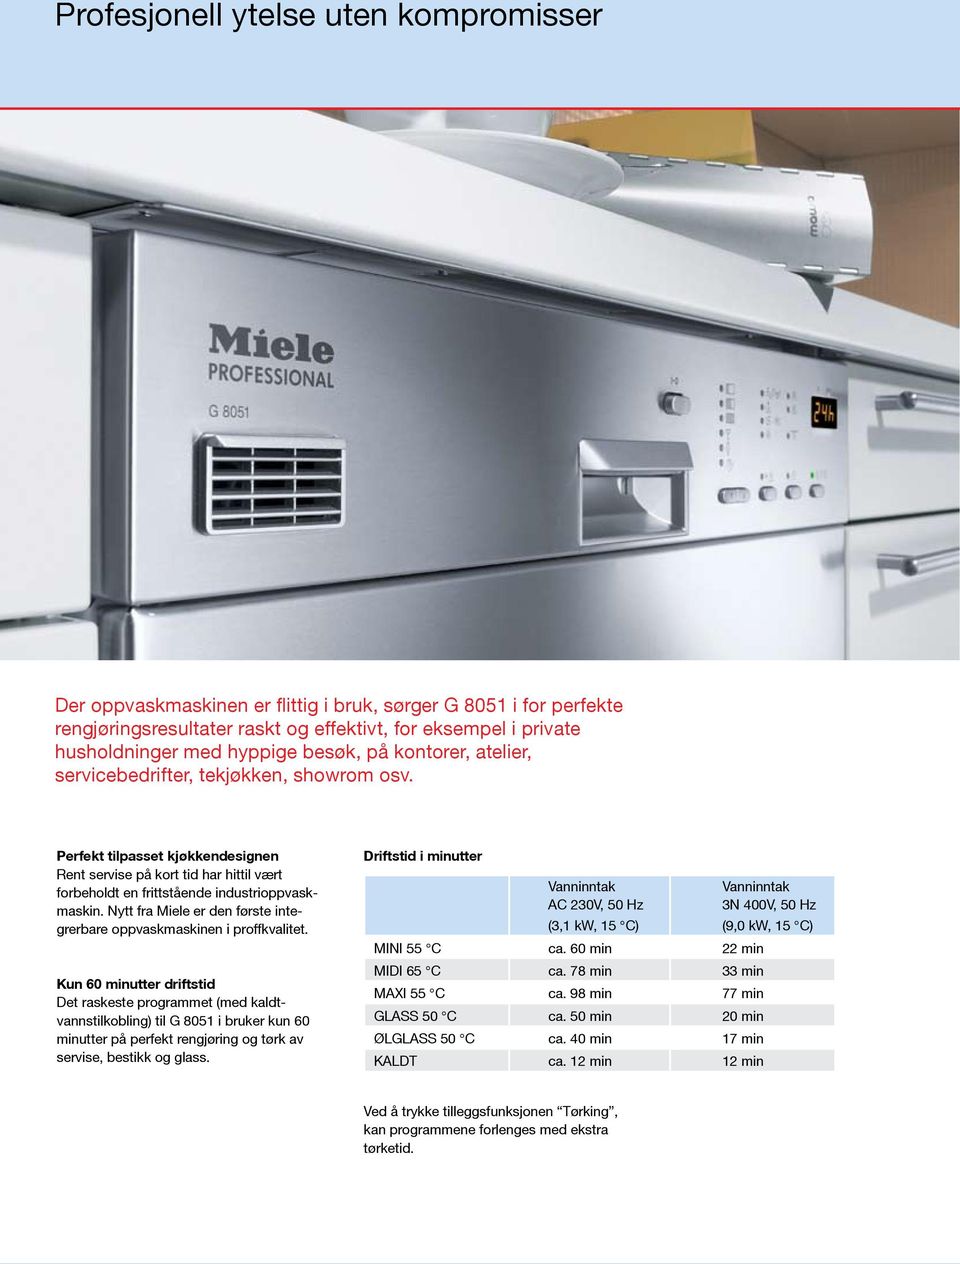 Nytt fra Miele er den første integrerbare oppvaskmaskinen i proffkvalitet.